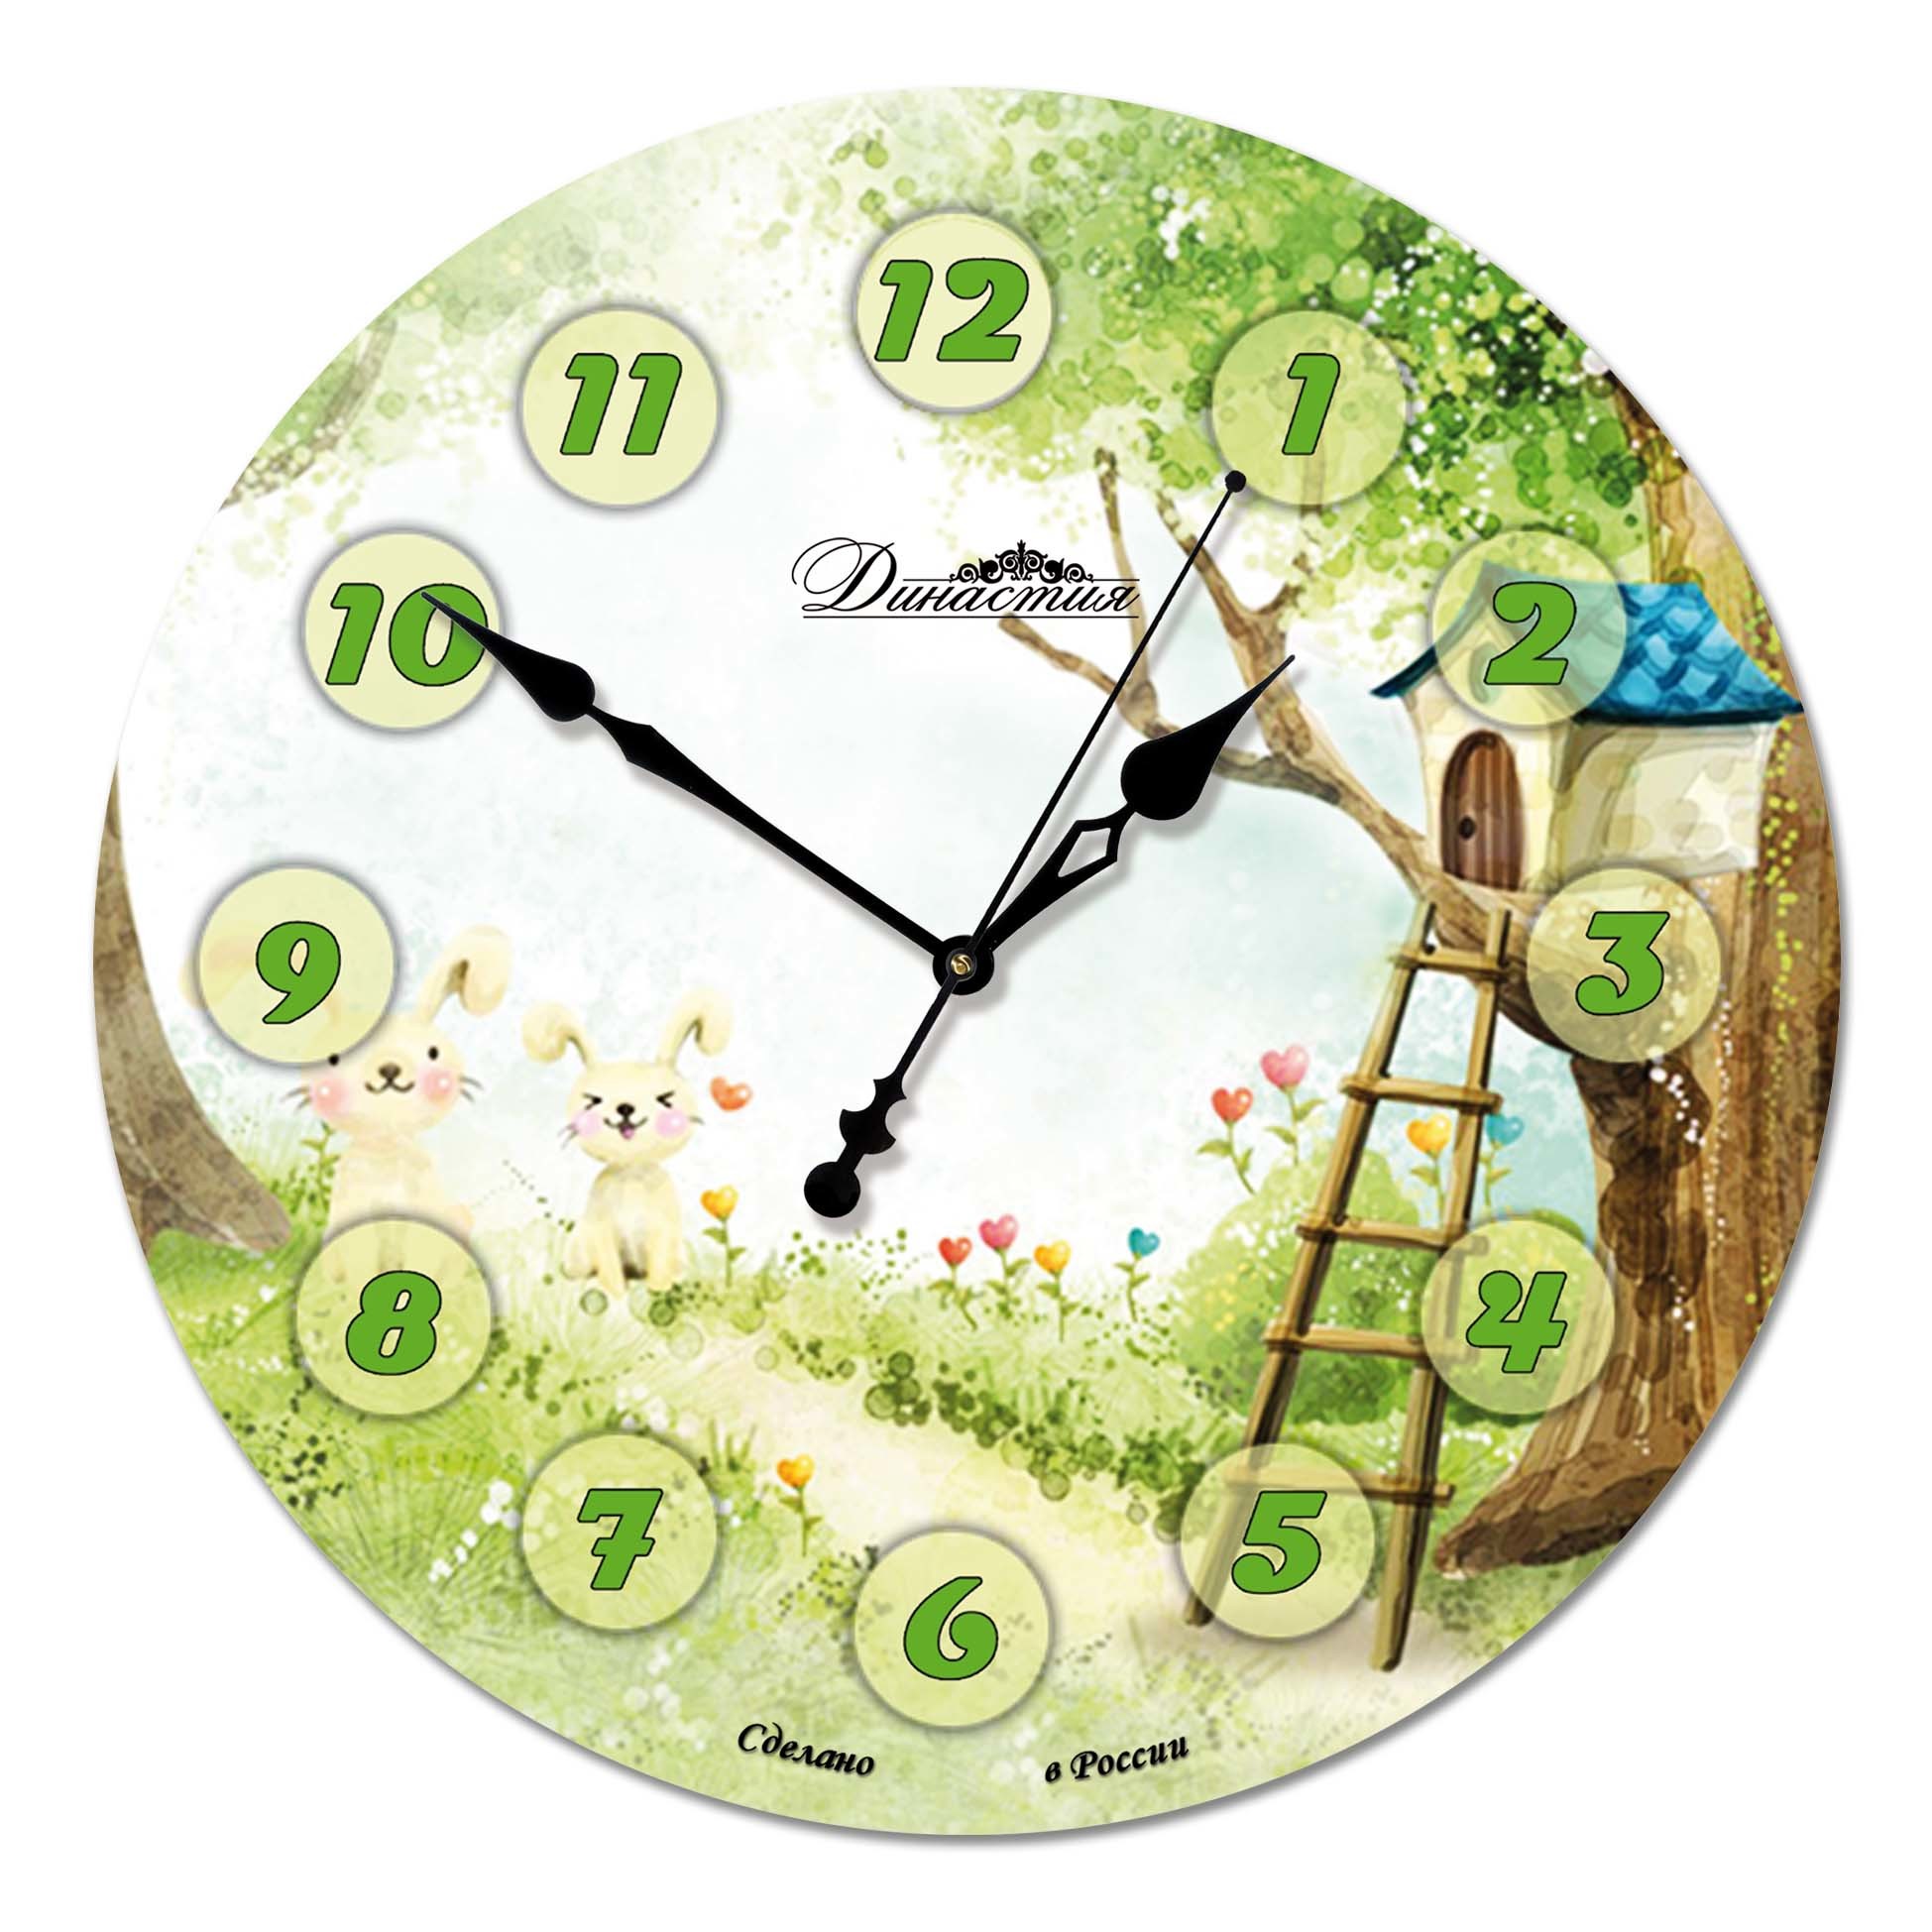 Настенные часы екатеринбург. Настенные часы (33 см) Династия 01-079. Интерьерные часы. Оригинальные настенные часы. Часы настенные стеклянные.